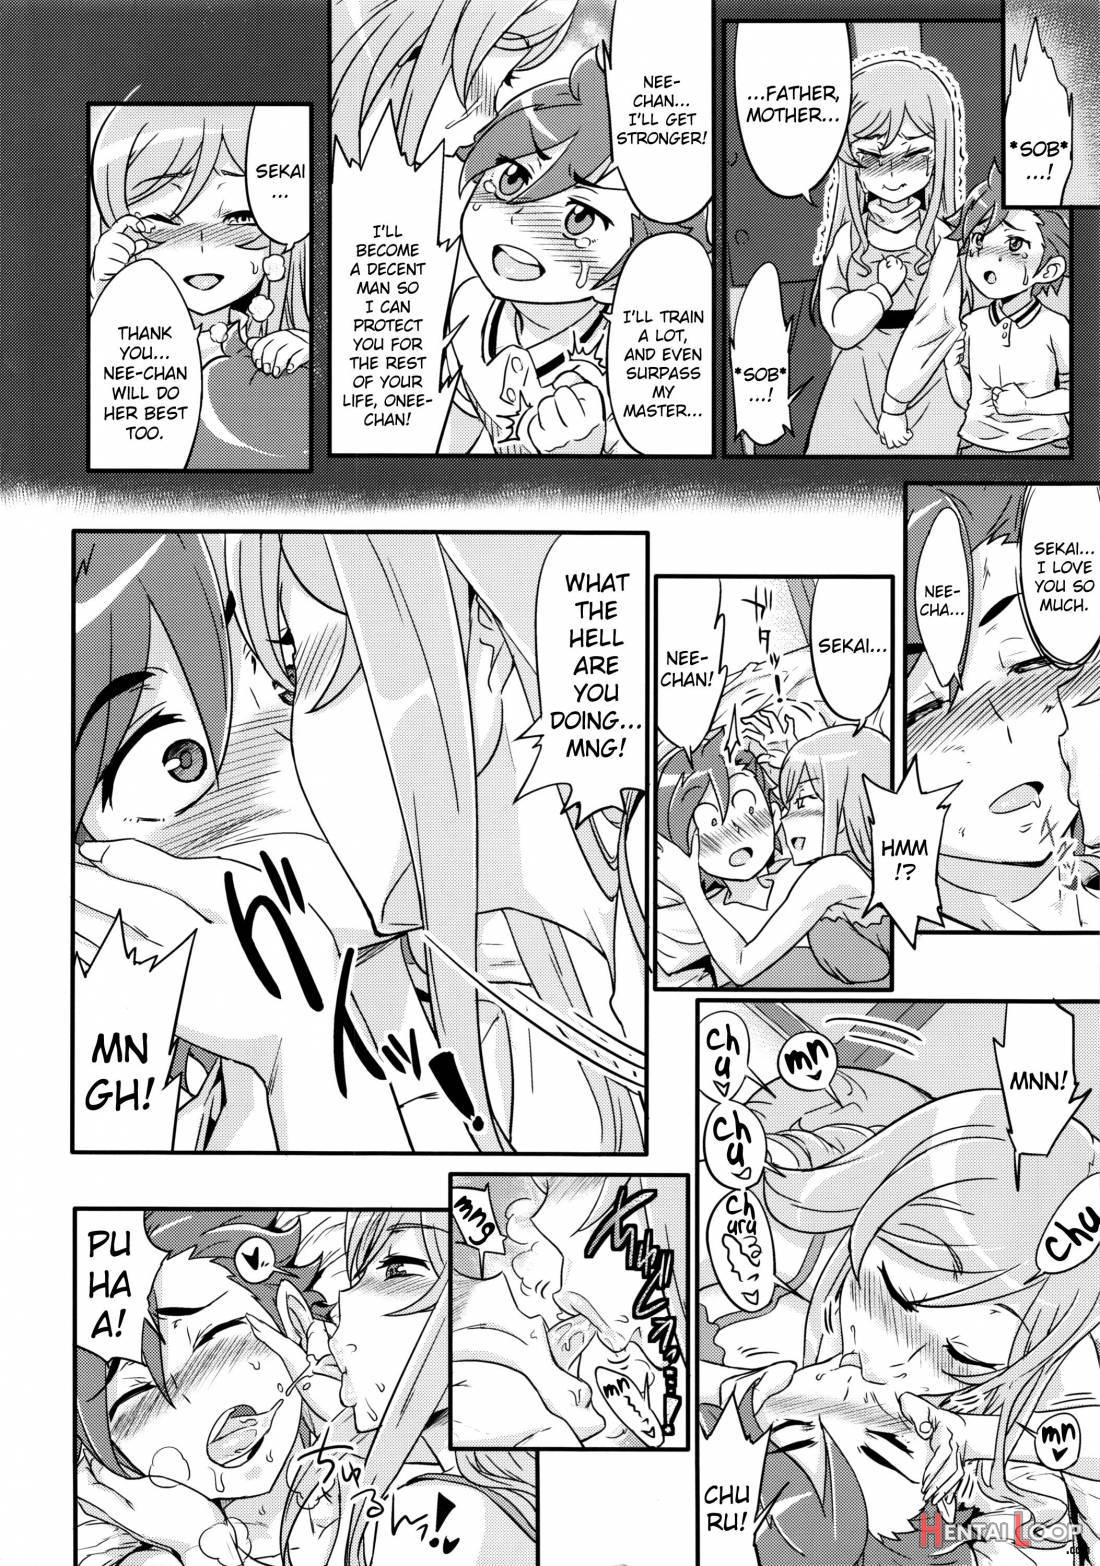 Mirai-neechan To Tsukurou! page 3